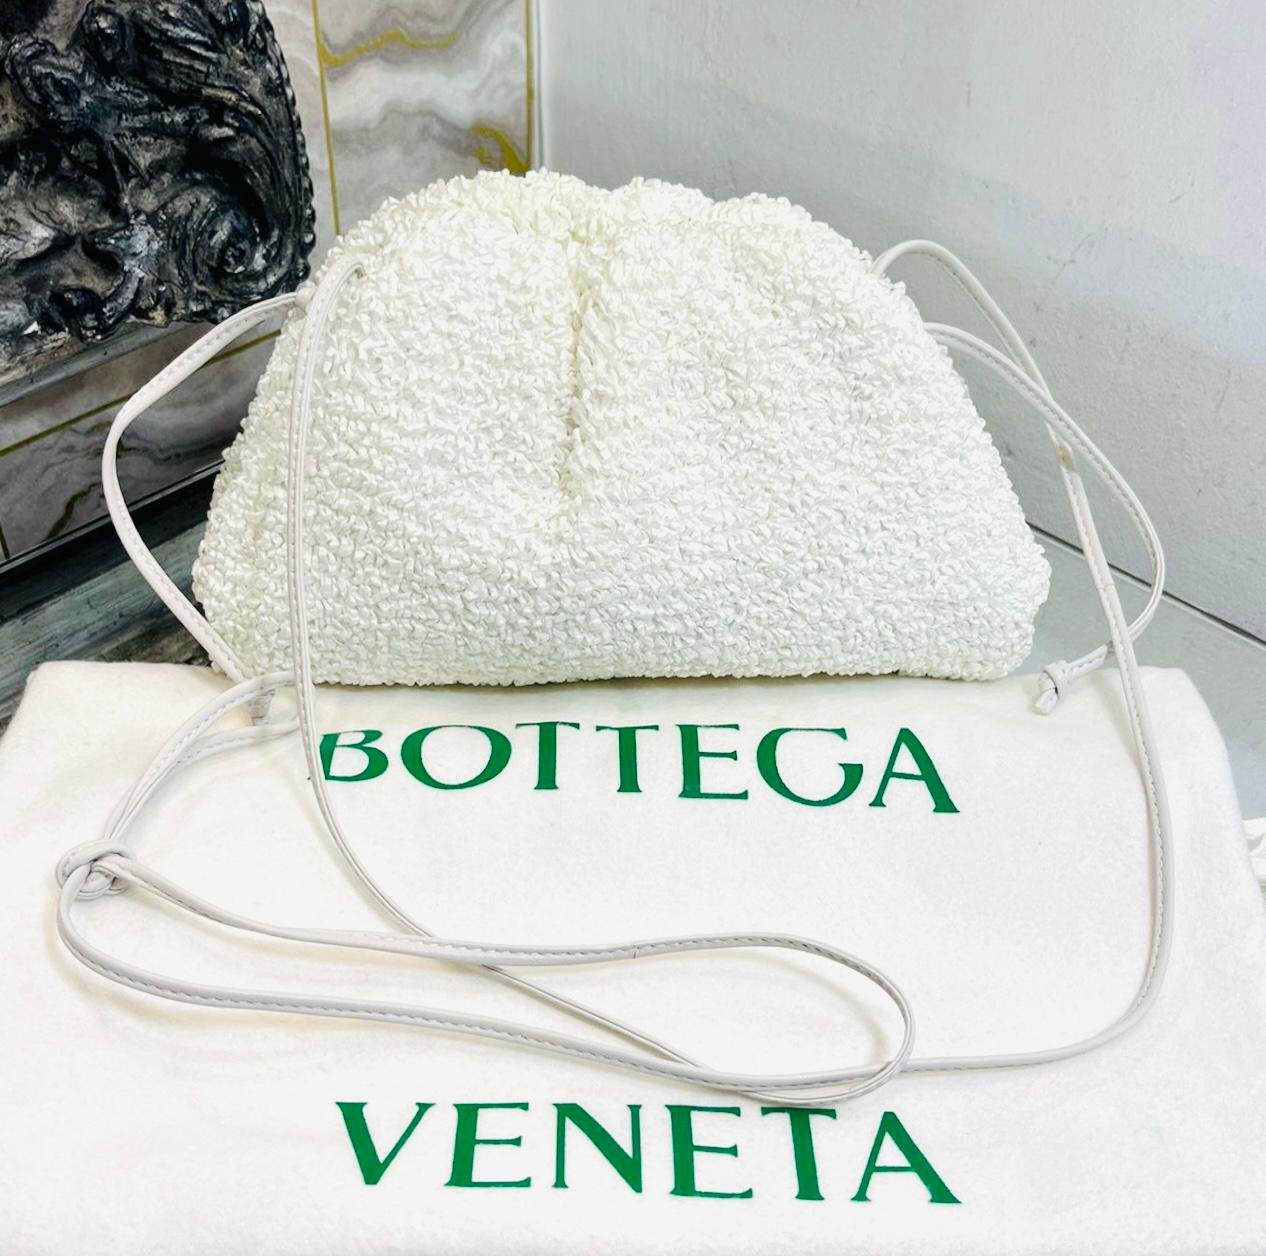 Bottega Veneta - Mini pochette en raphia

Sac ivoire conçu avec du cuir à effet bouclé.

Il est doté d'une longue bandoulière et d'une fermeture magnétique sur le dessus.

Intérieur en cuir lisse. Rrp £2100

Taille - Hauteur 15cm, Largeur 27cm,